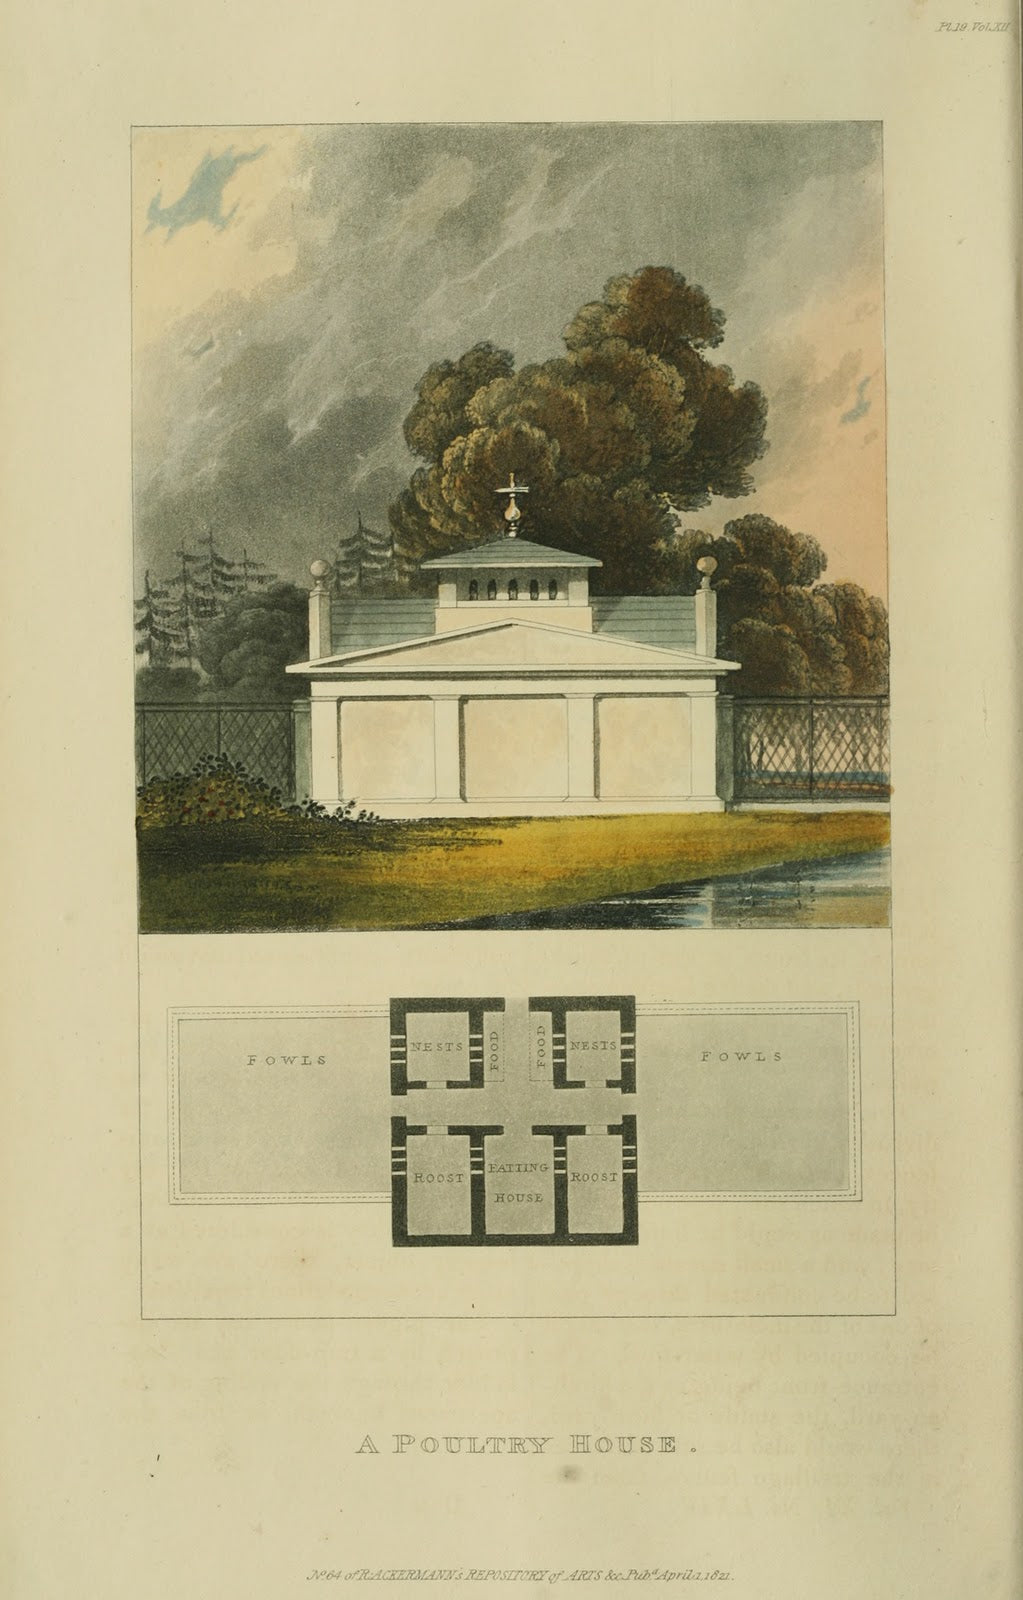 Depósito de Ackermann - 1821 Placa de gallinero 19